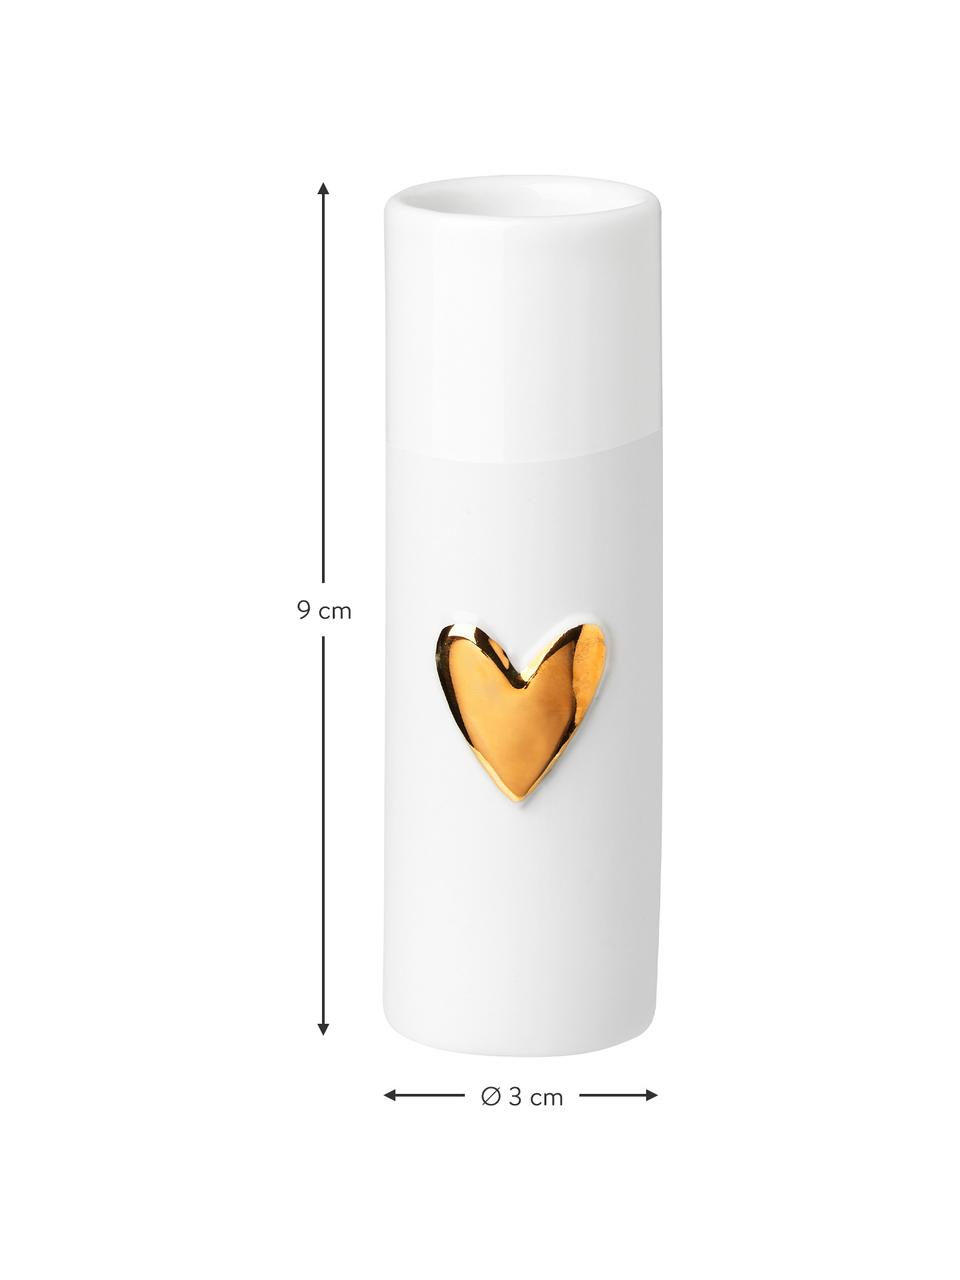 Kleine vazenset Heart van porselein, 4-delig, Porselein, Wit, goudkleurig, Ø 3 x H 9 cm